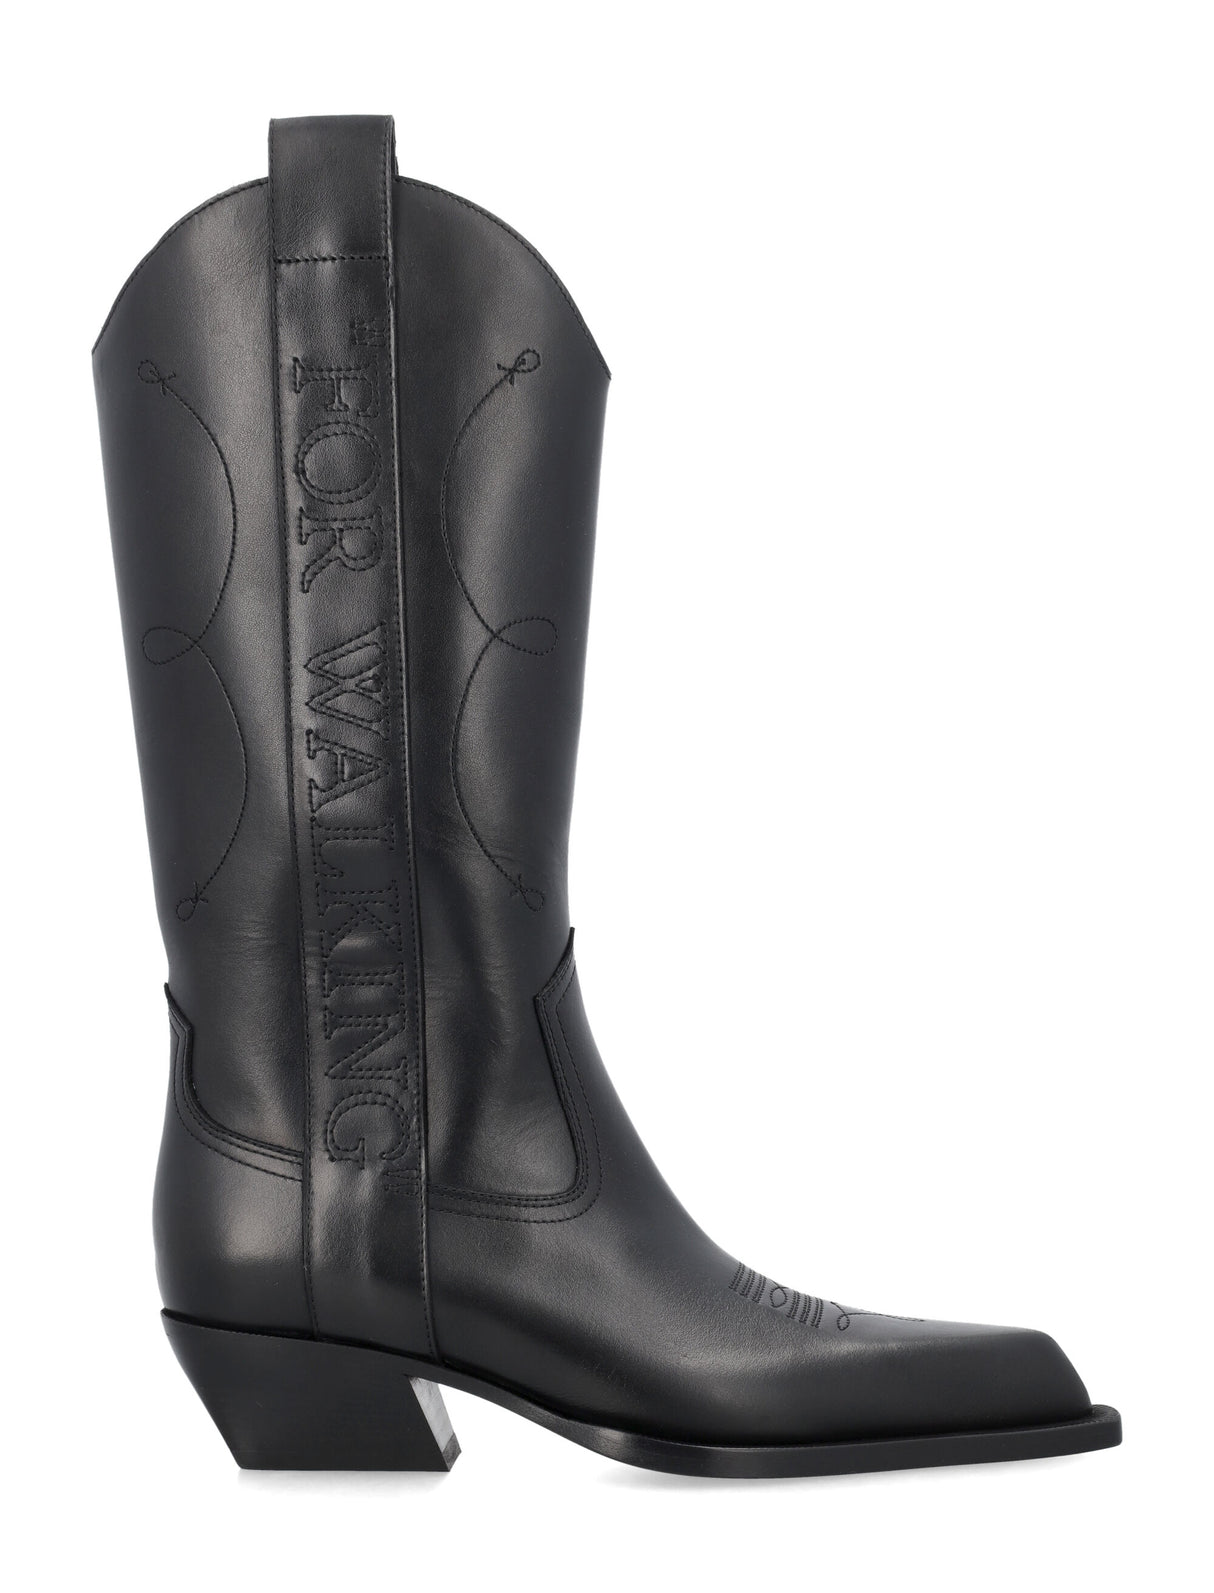 Western Leather Boots cho Nữ - Thích hợp cho những ngày mưa!